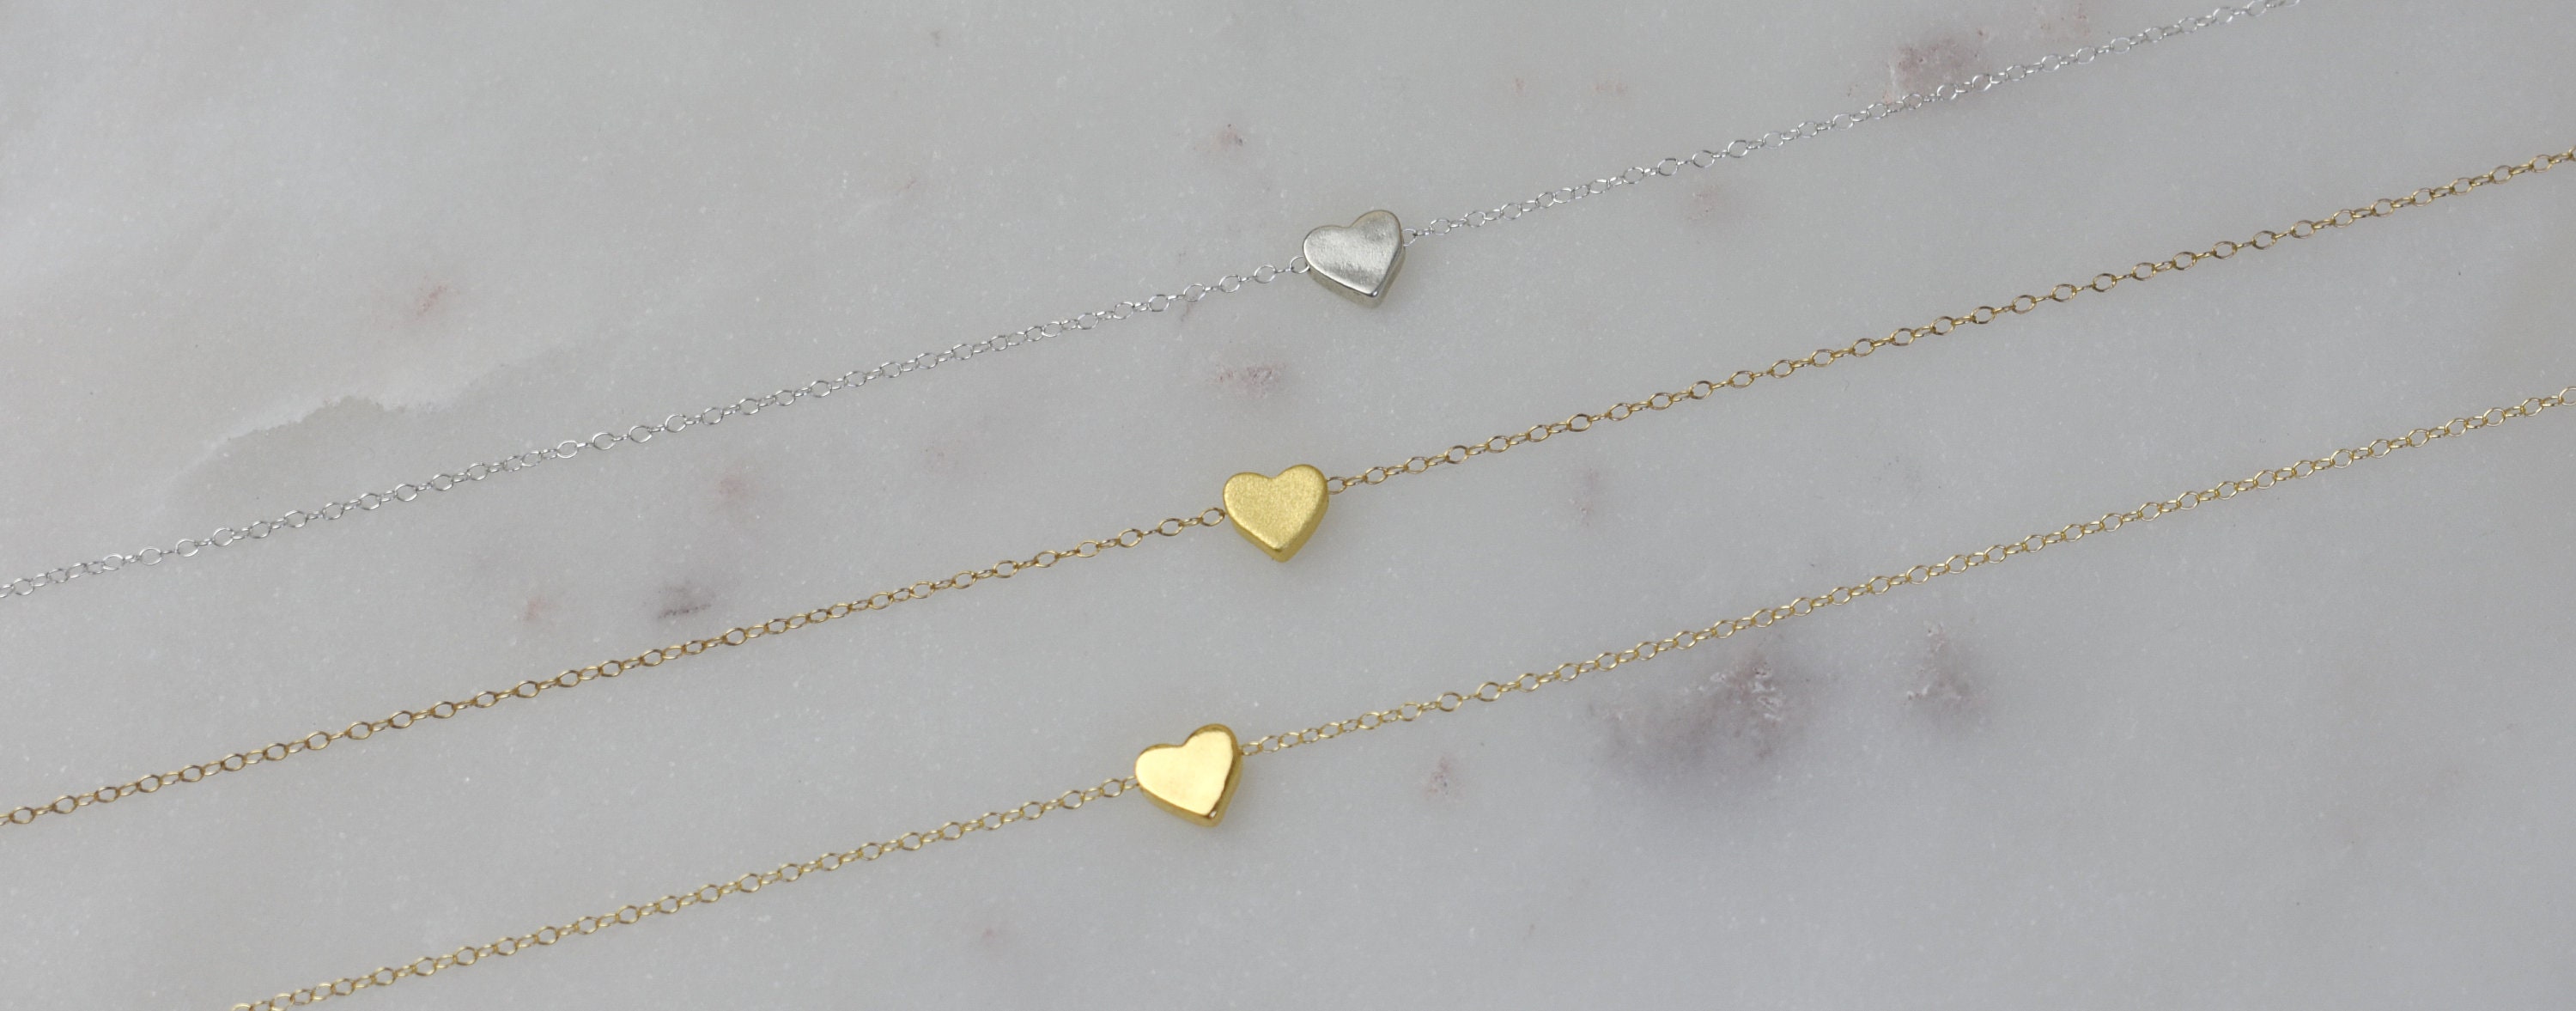 Tiny Heart Necklace Gold Heart Necklace Dainty Heart | Etsy